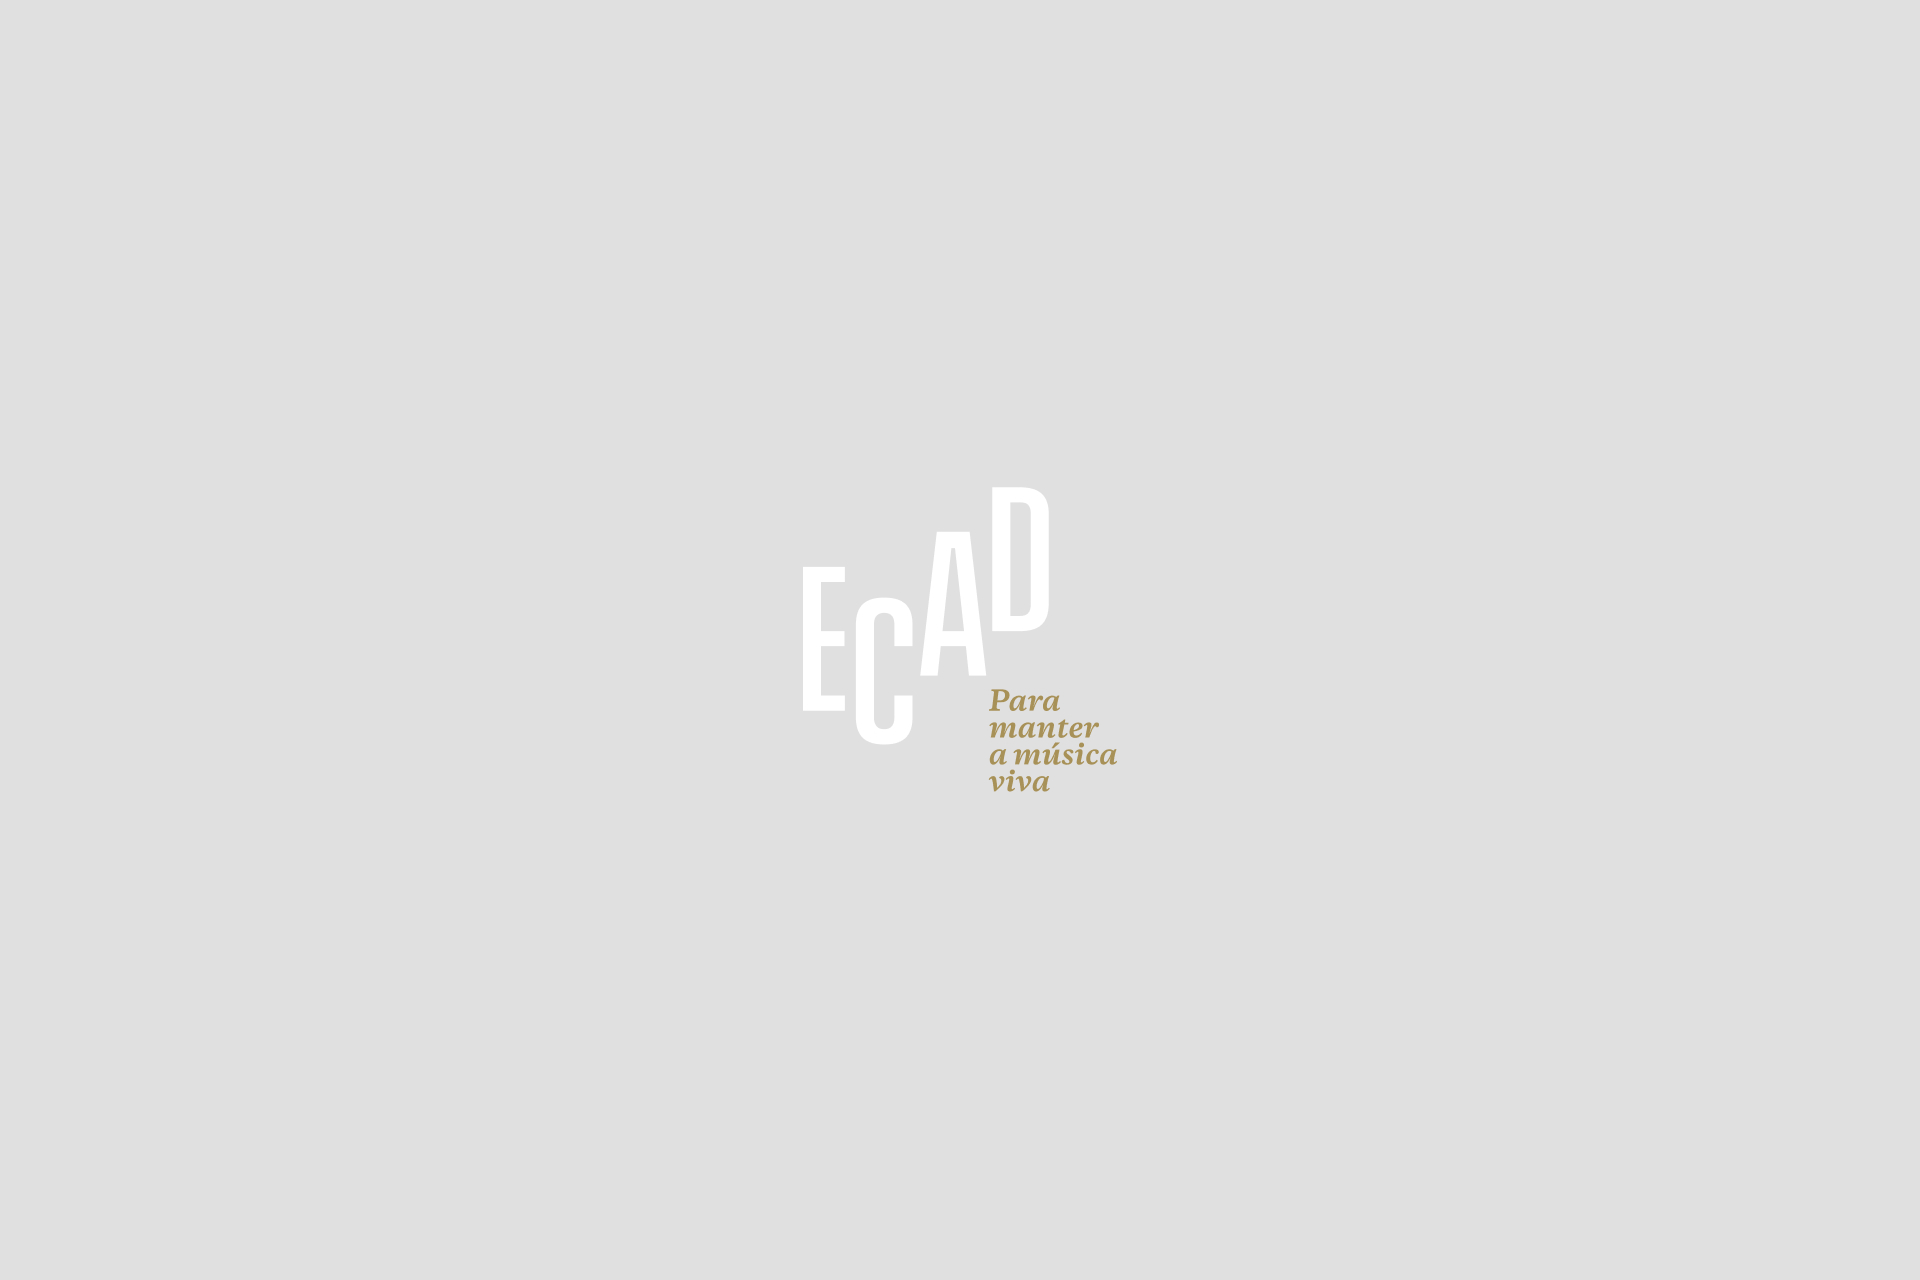 Ecad publica Relatório de Sustentabilidade e Balanços de 2010